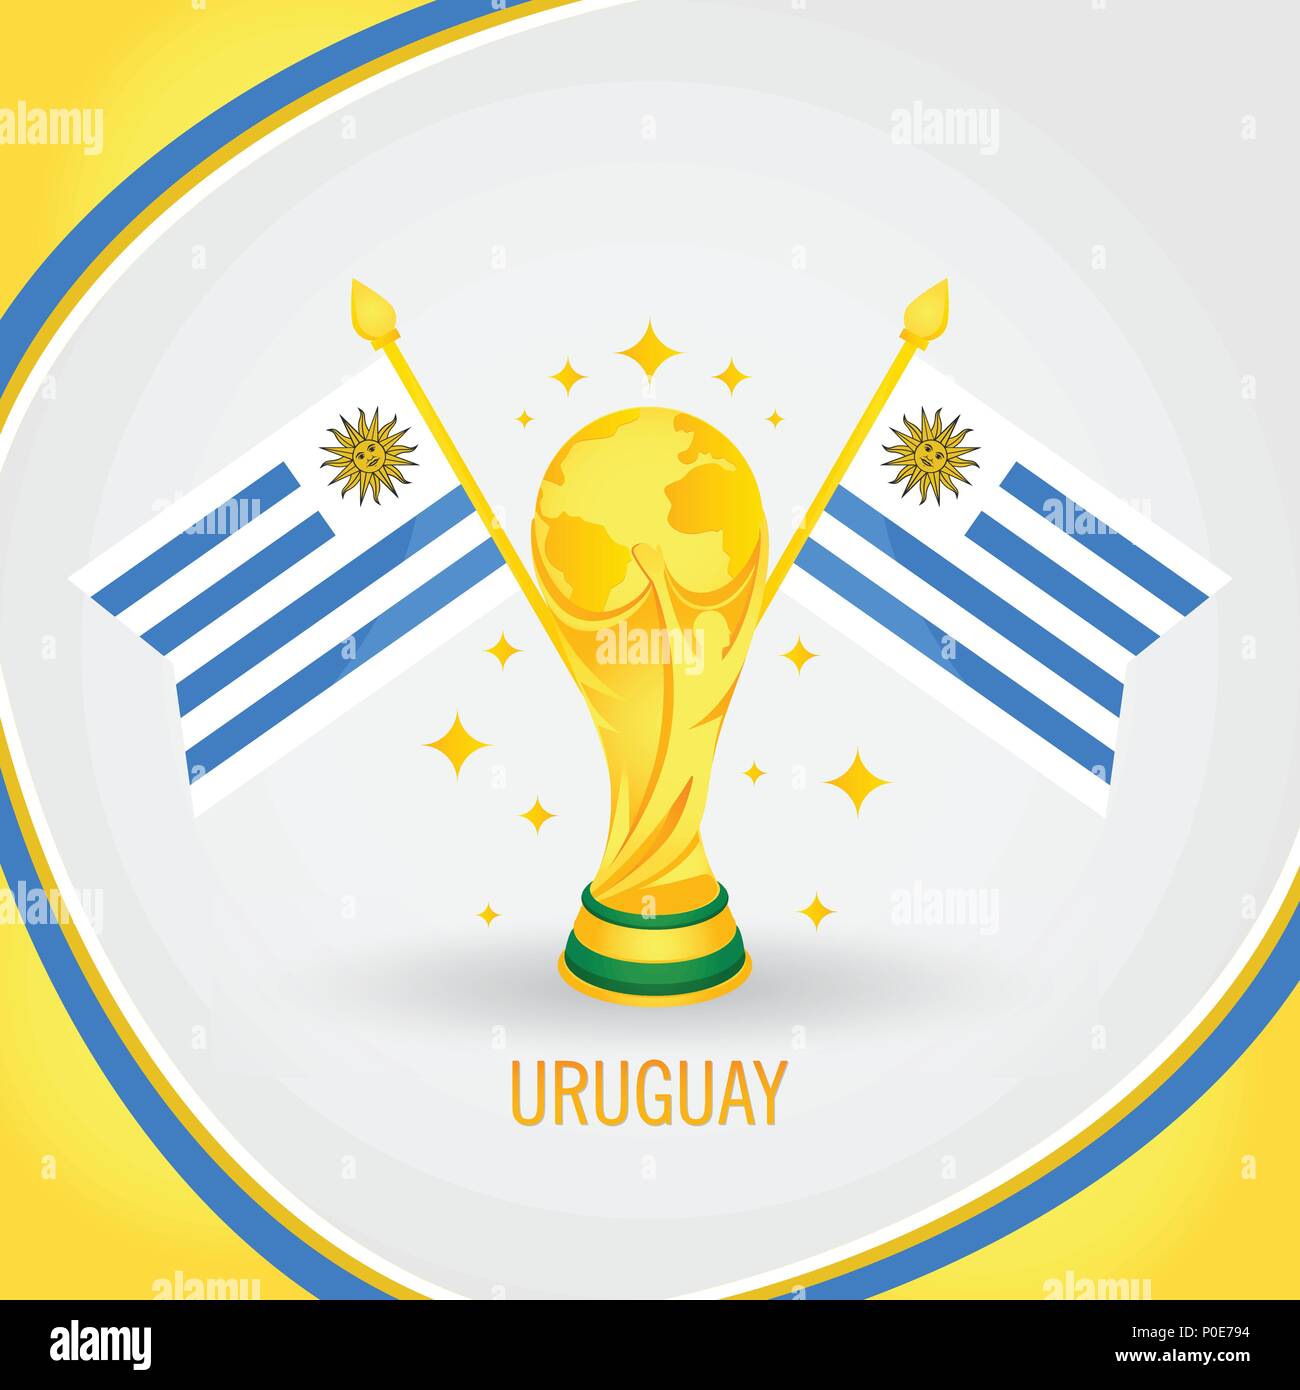 Uruguay campeón de la Copa del Mundo!